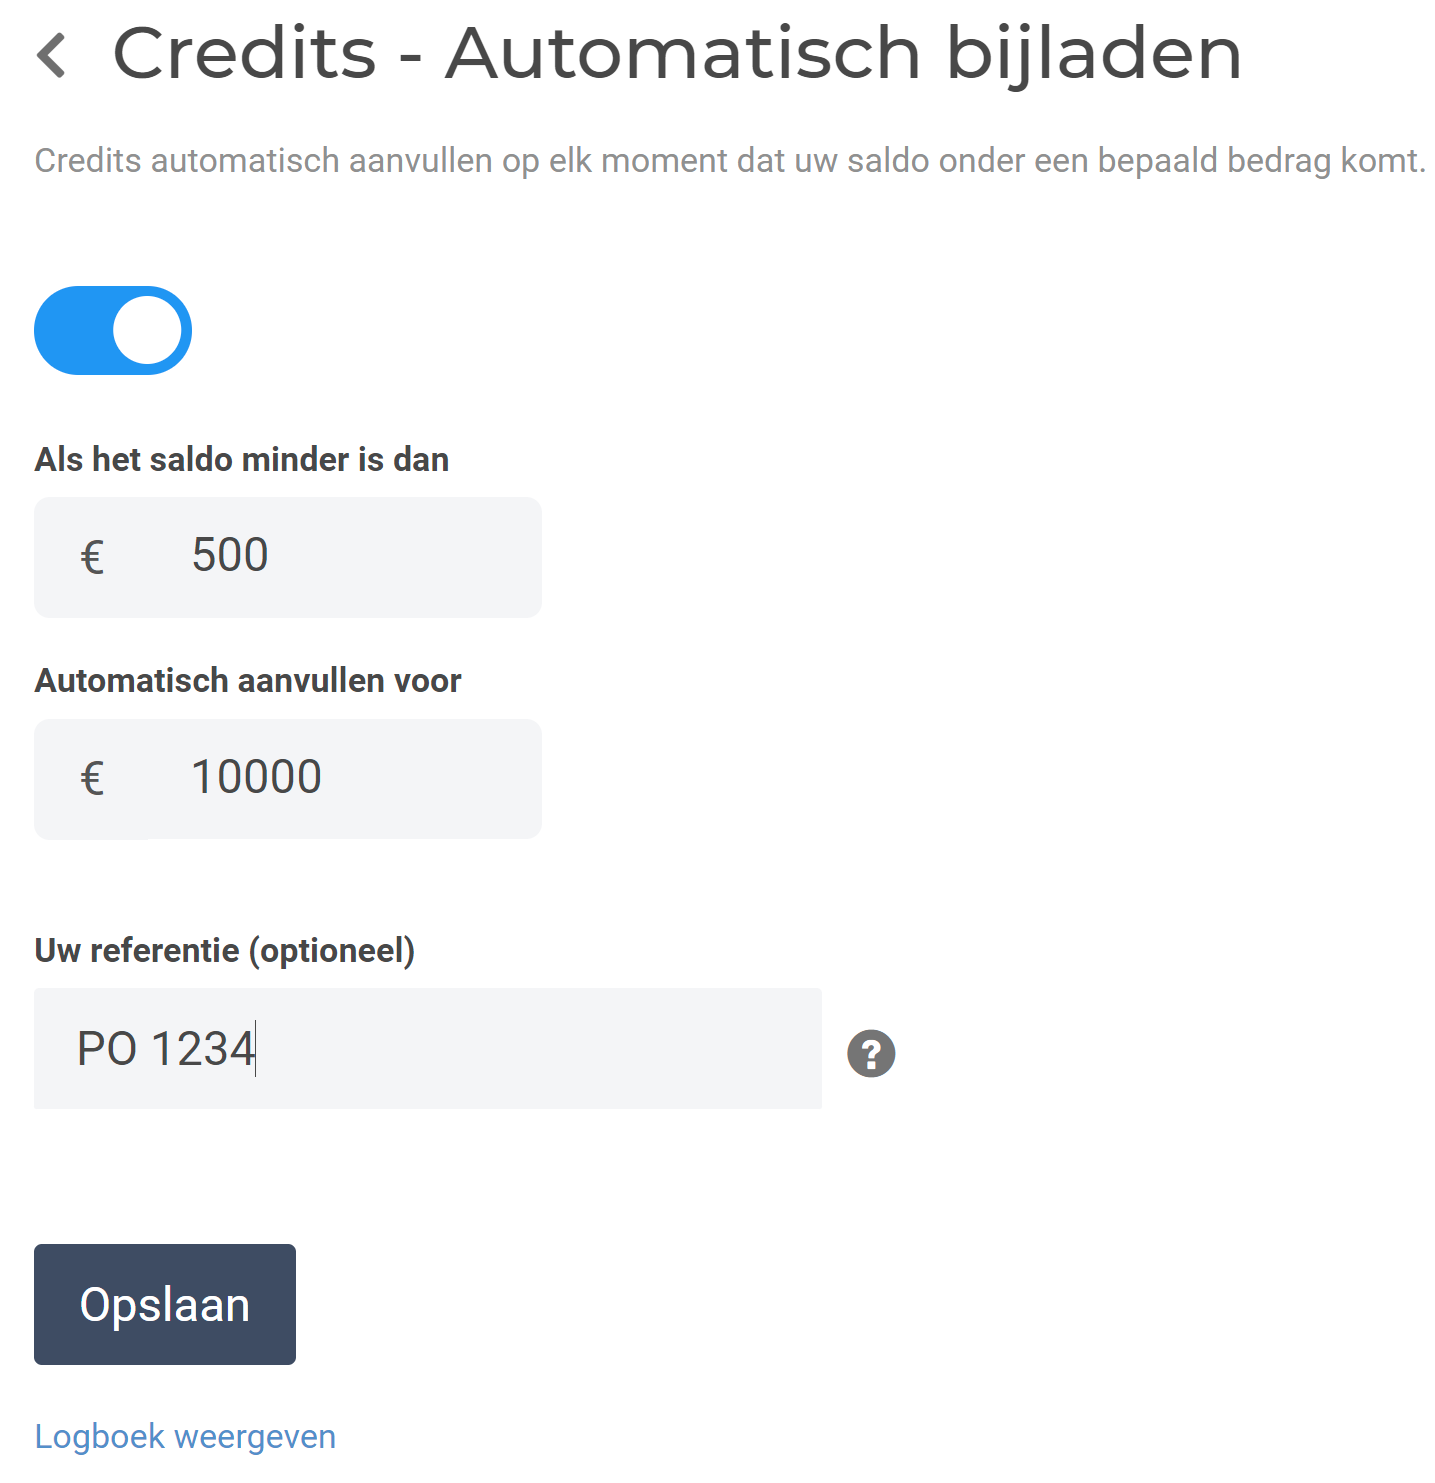 Credits - Automatisch bijladen